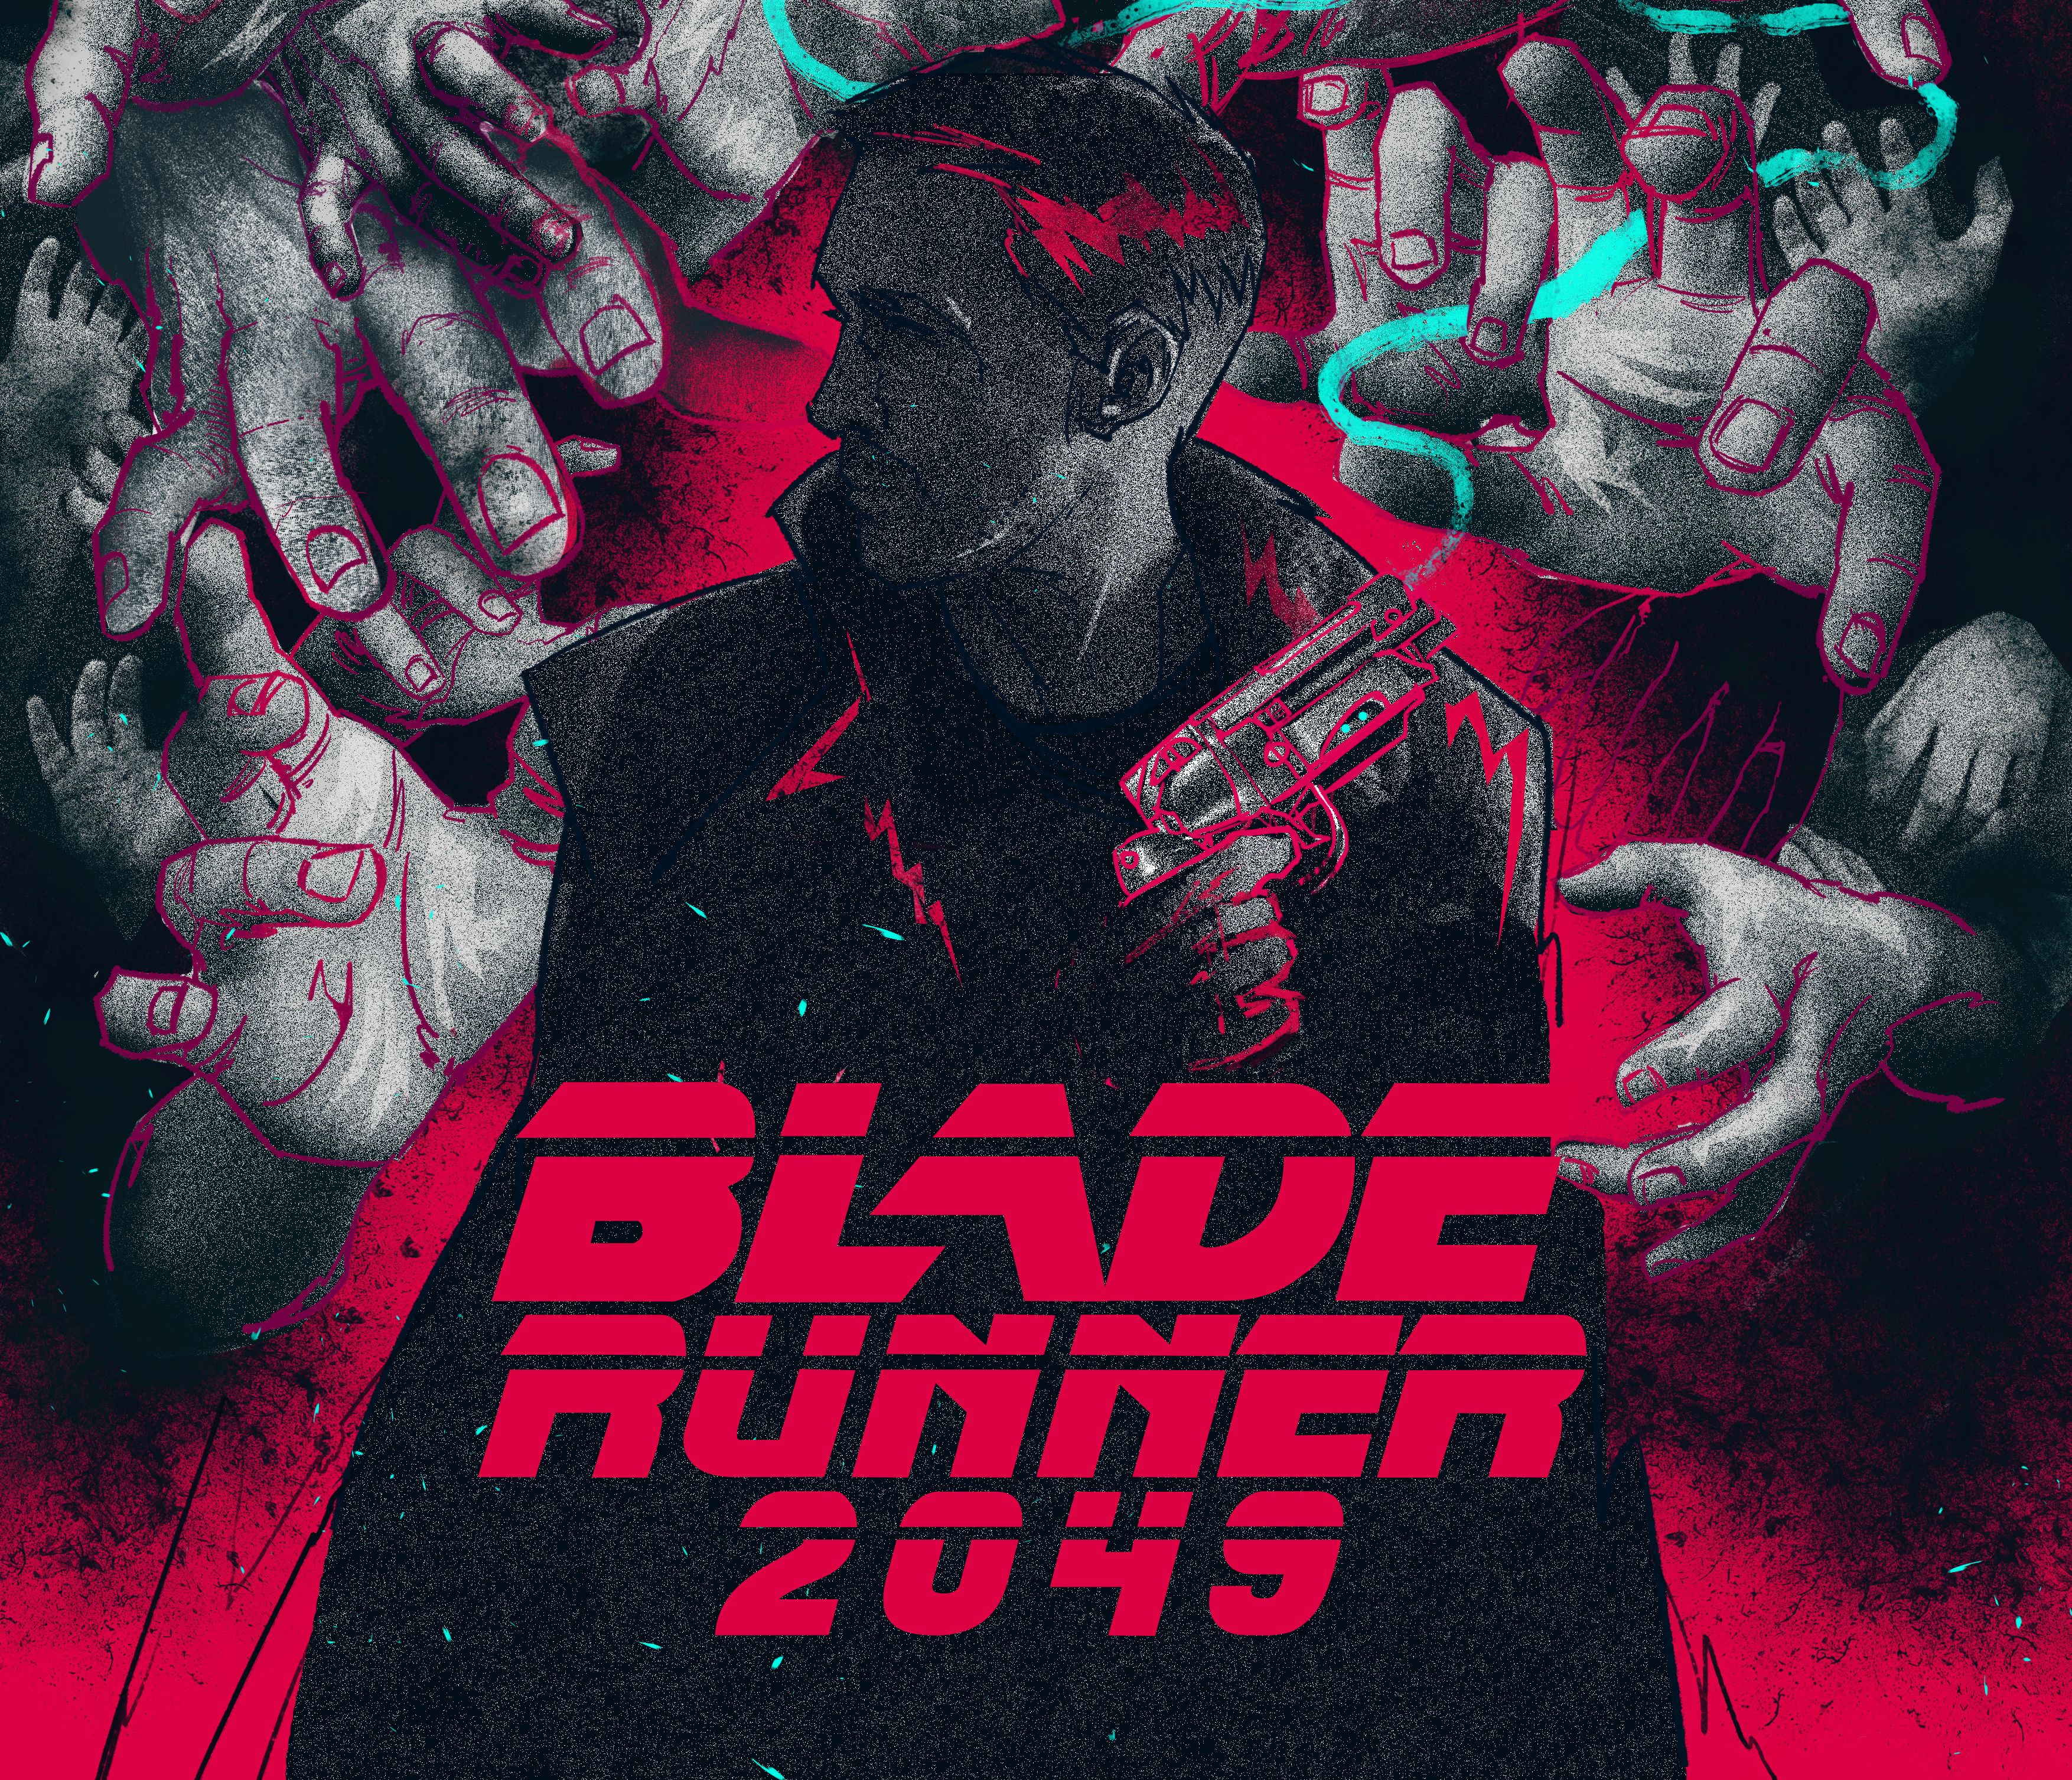 officer k (blade runner 2049), blade runner 2049, movie